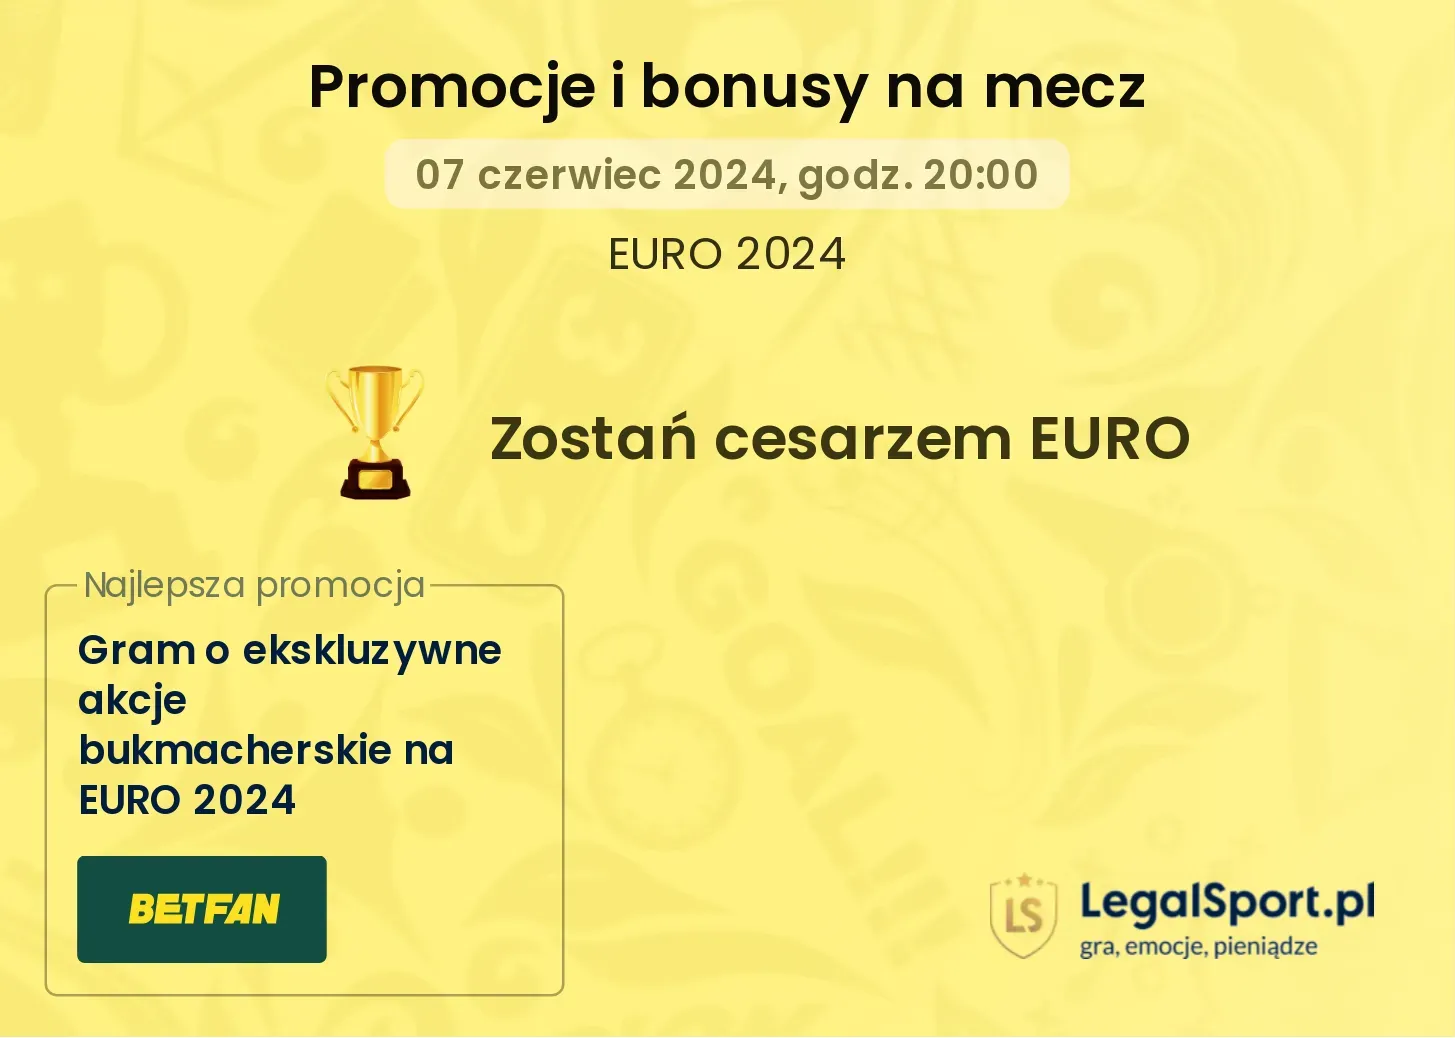 Zostań cesarzem EURO promocje bonusy na mecz